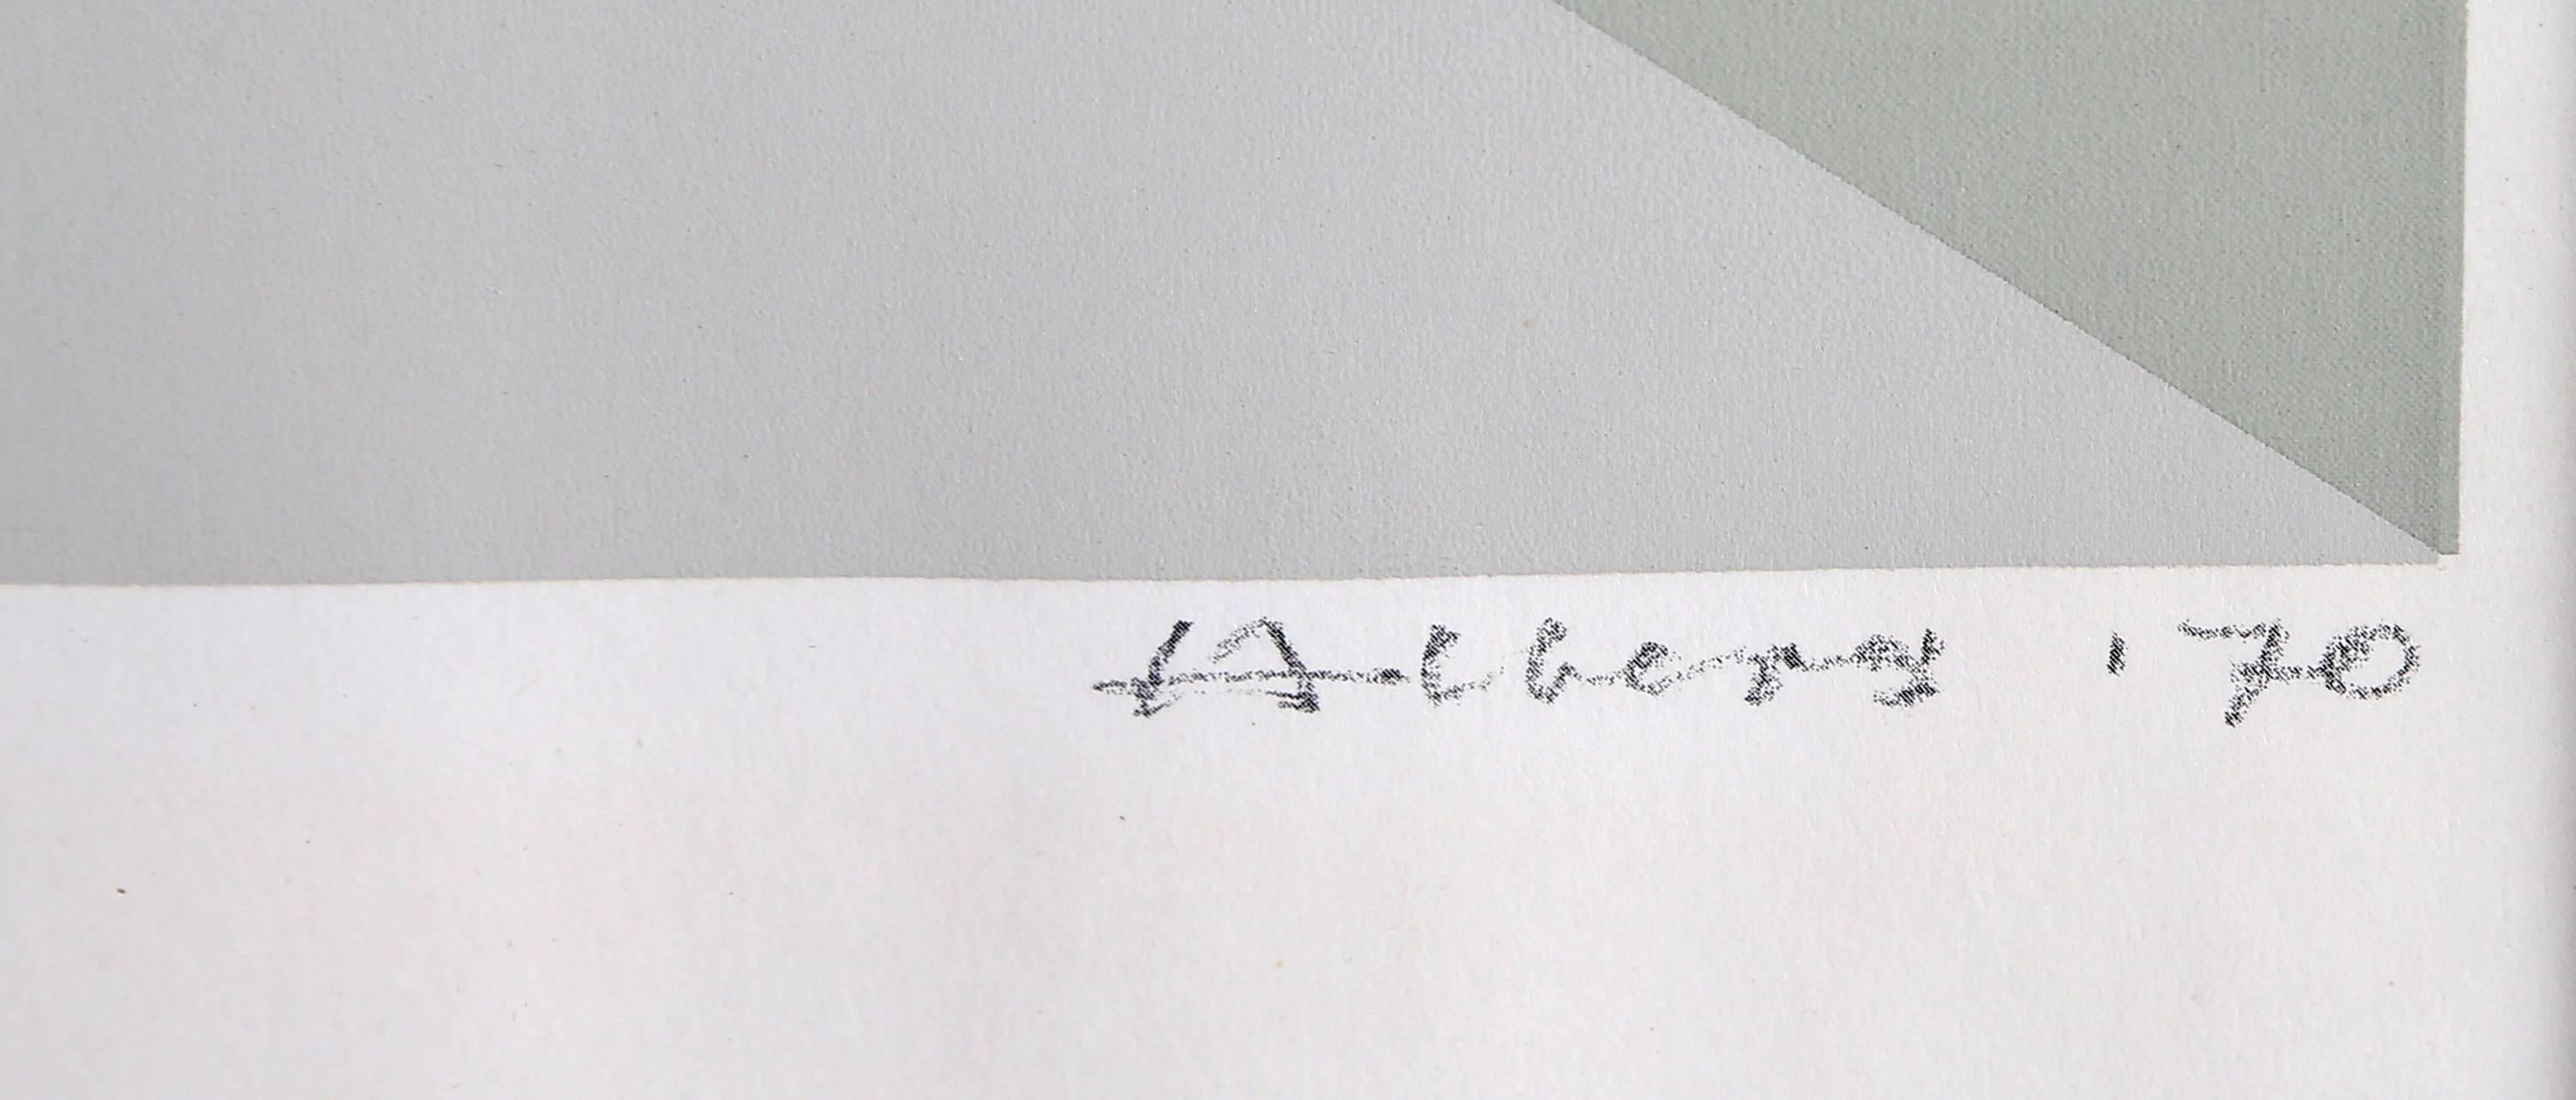 Artiste : Josef Albers, allemand (1888 - 1976)
Titre : Olympische Spielen Muenchen
Année : 1970 (publié en 1972)
Moyen : Affiche sérigraphiée, signée dans le cliché
Edition : 3000
Taille : 42 x 27 in. (106.68 x 68.58 cm)
Cadre : 43.5 x 28.5 pouces